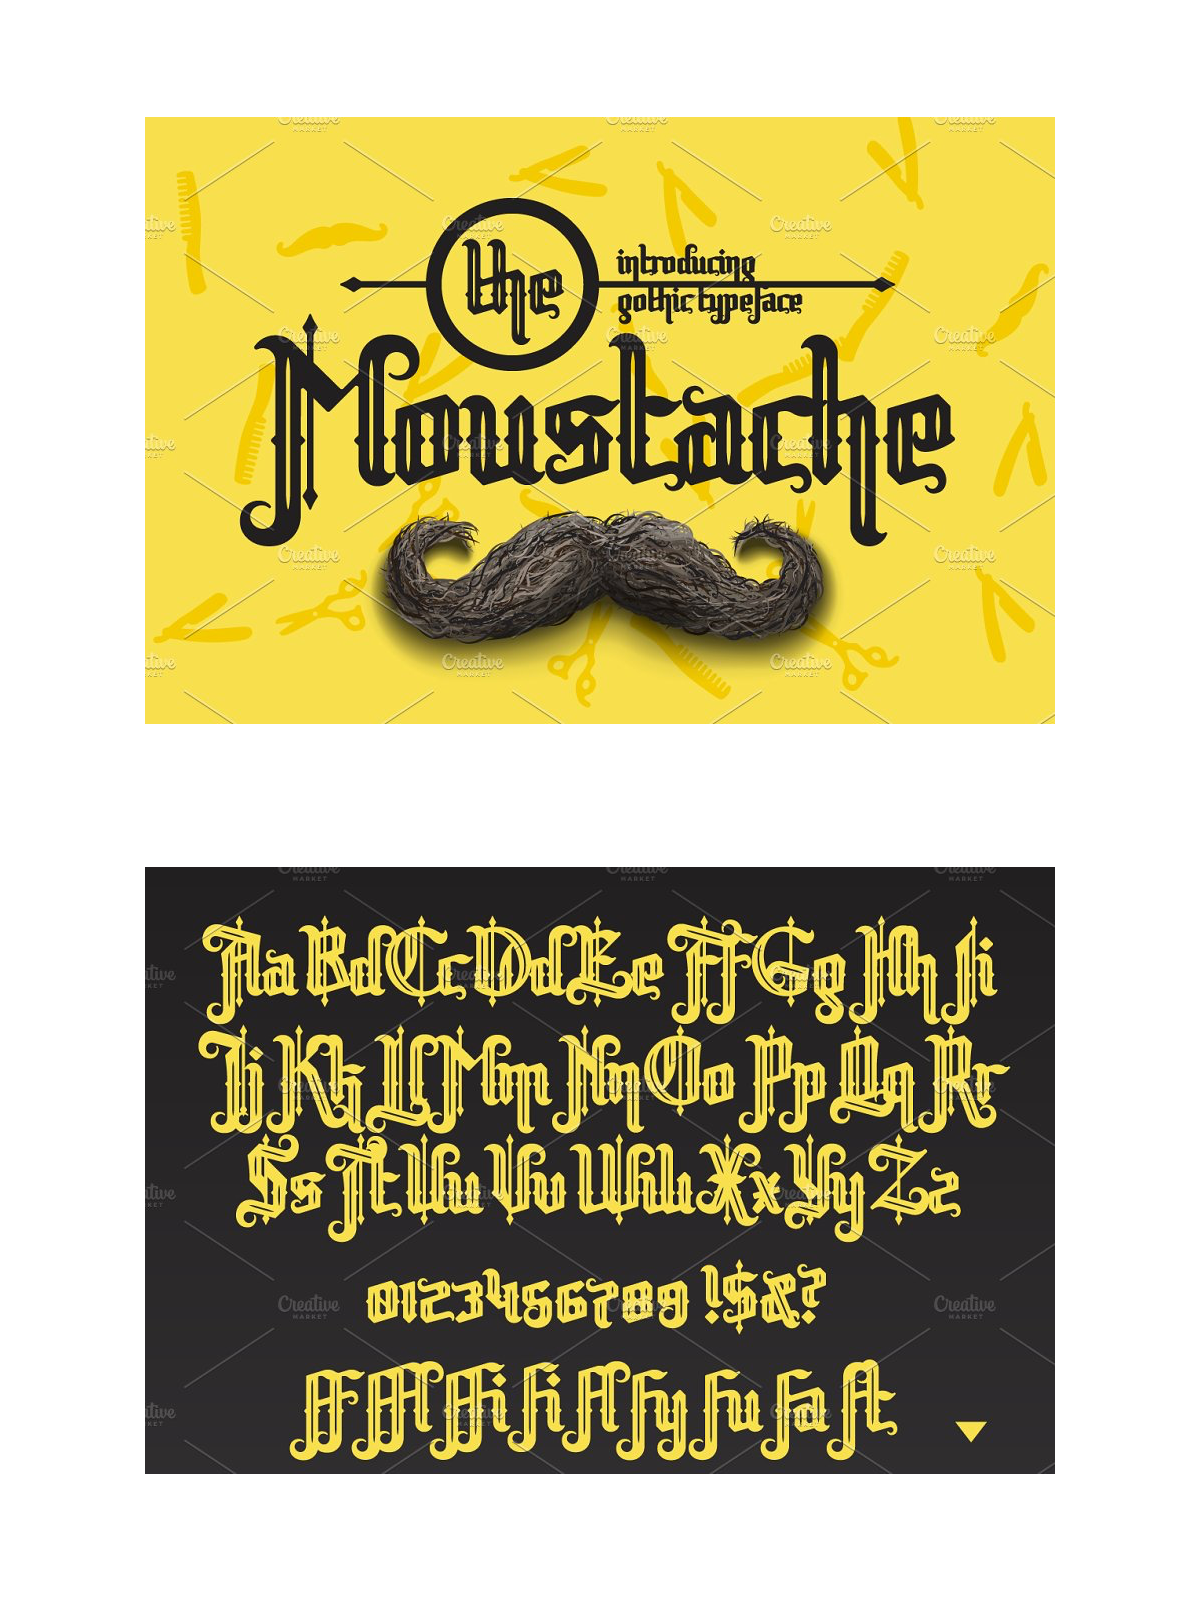 Moustache font pinterest image preview.